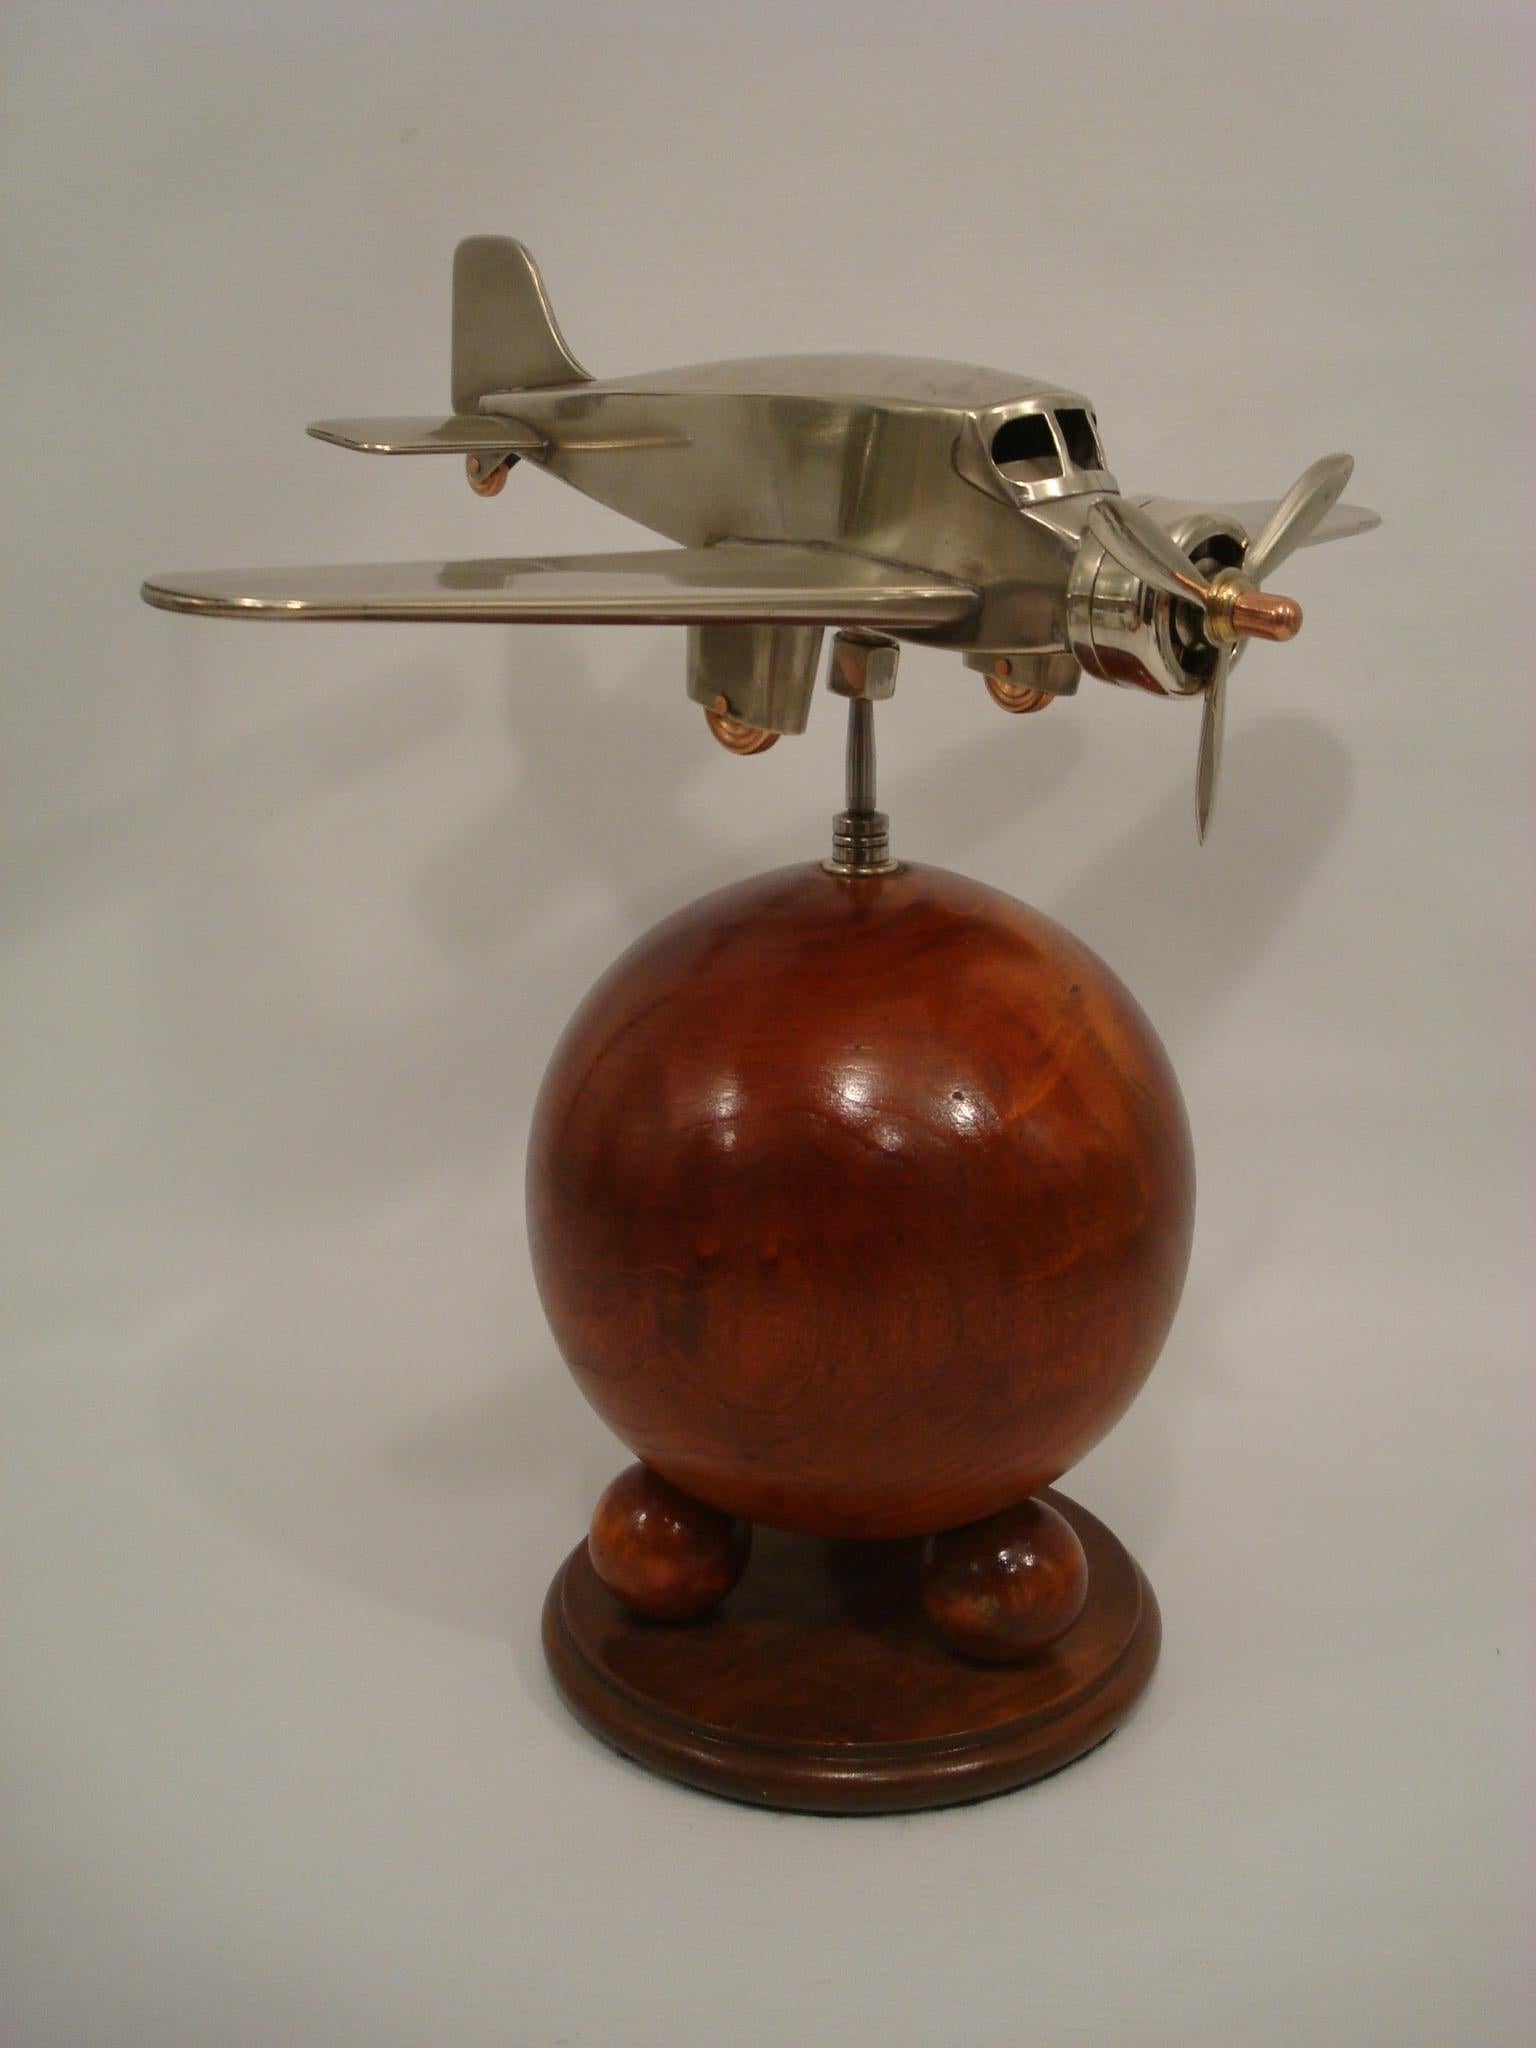 Modèle de bureau d'avion en laiton Art déco, années 1930.
Magnifique modèle de bureau d'aviation, fabriqué au Royaume-Uni dans les années 1930.
Excellent état de restauration. L'avion peut être réglé dans n'importe quelle position et l'hélice